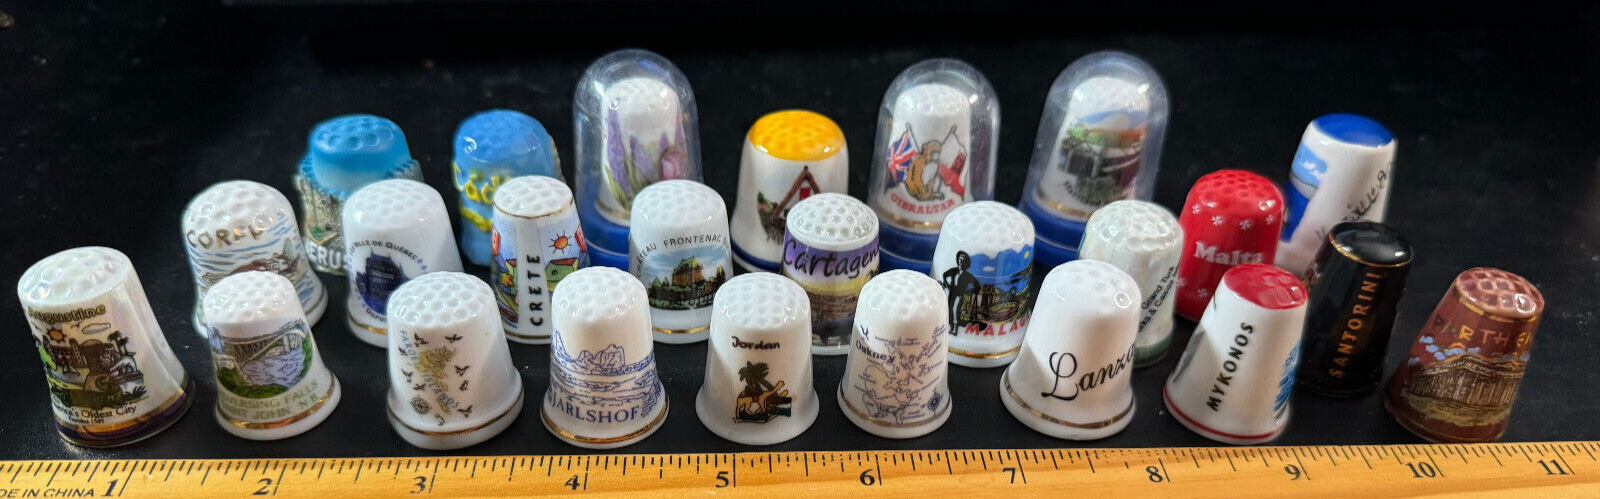 Lot of 25 porcelain thimbles - worldwide cities souvenirs - excellent